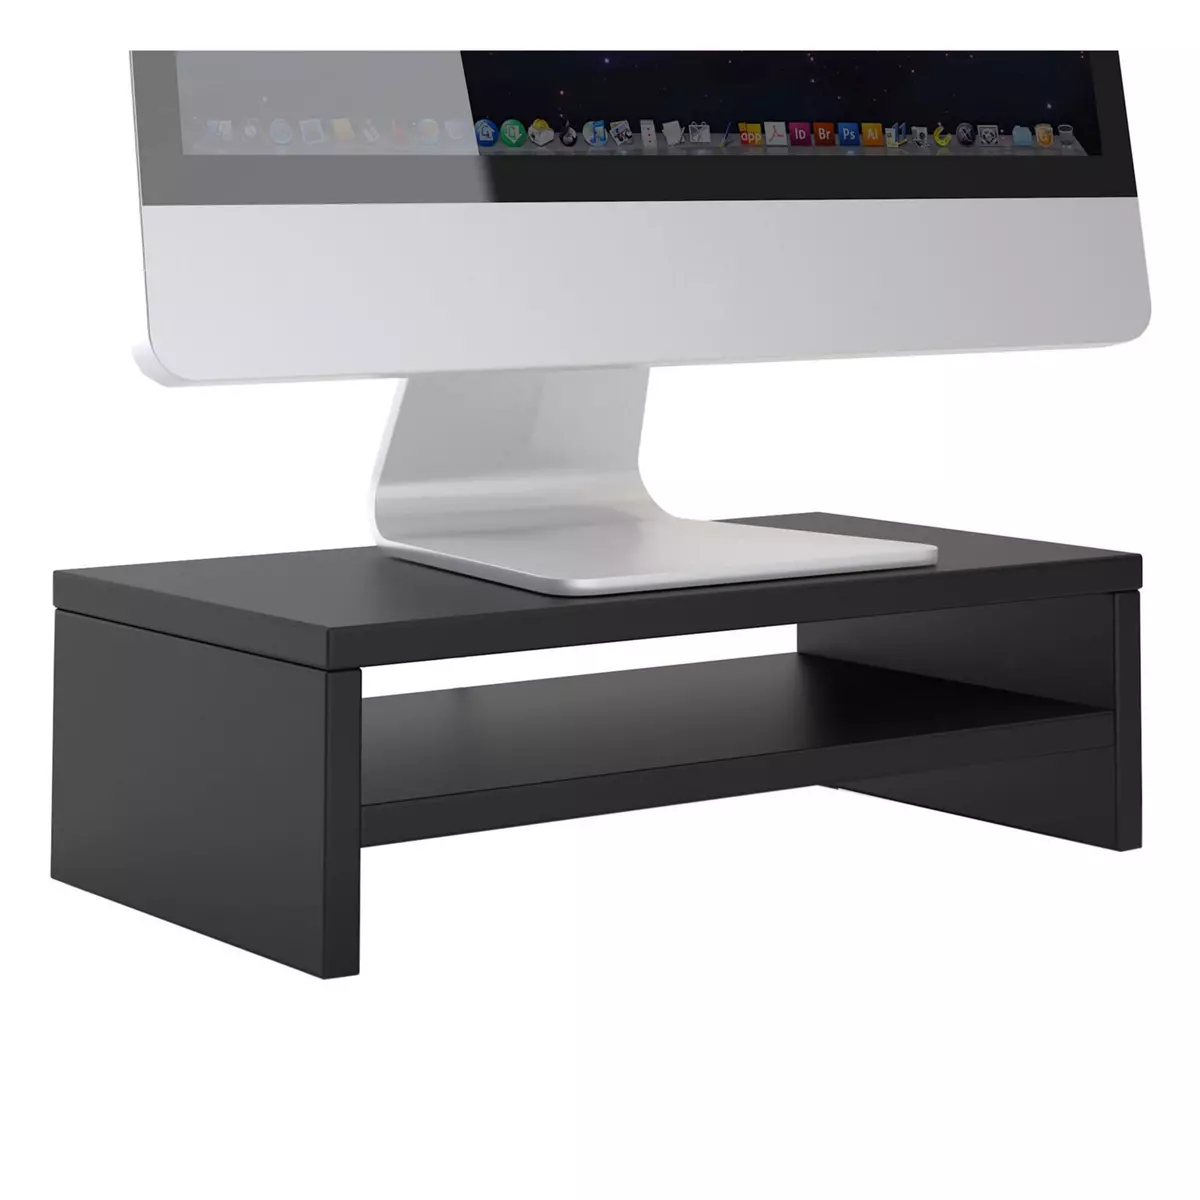 IDIMEX Support d'écran d'ordinateur DISPLAY, réhausseur pour moniteur avec étagère intermédiaire, longueur 42 cm, en mélaminé noir mat